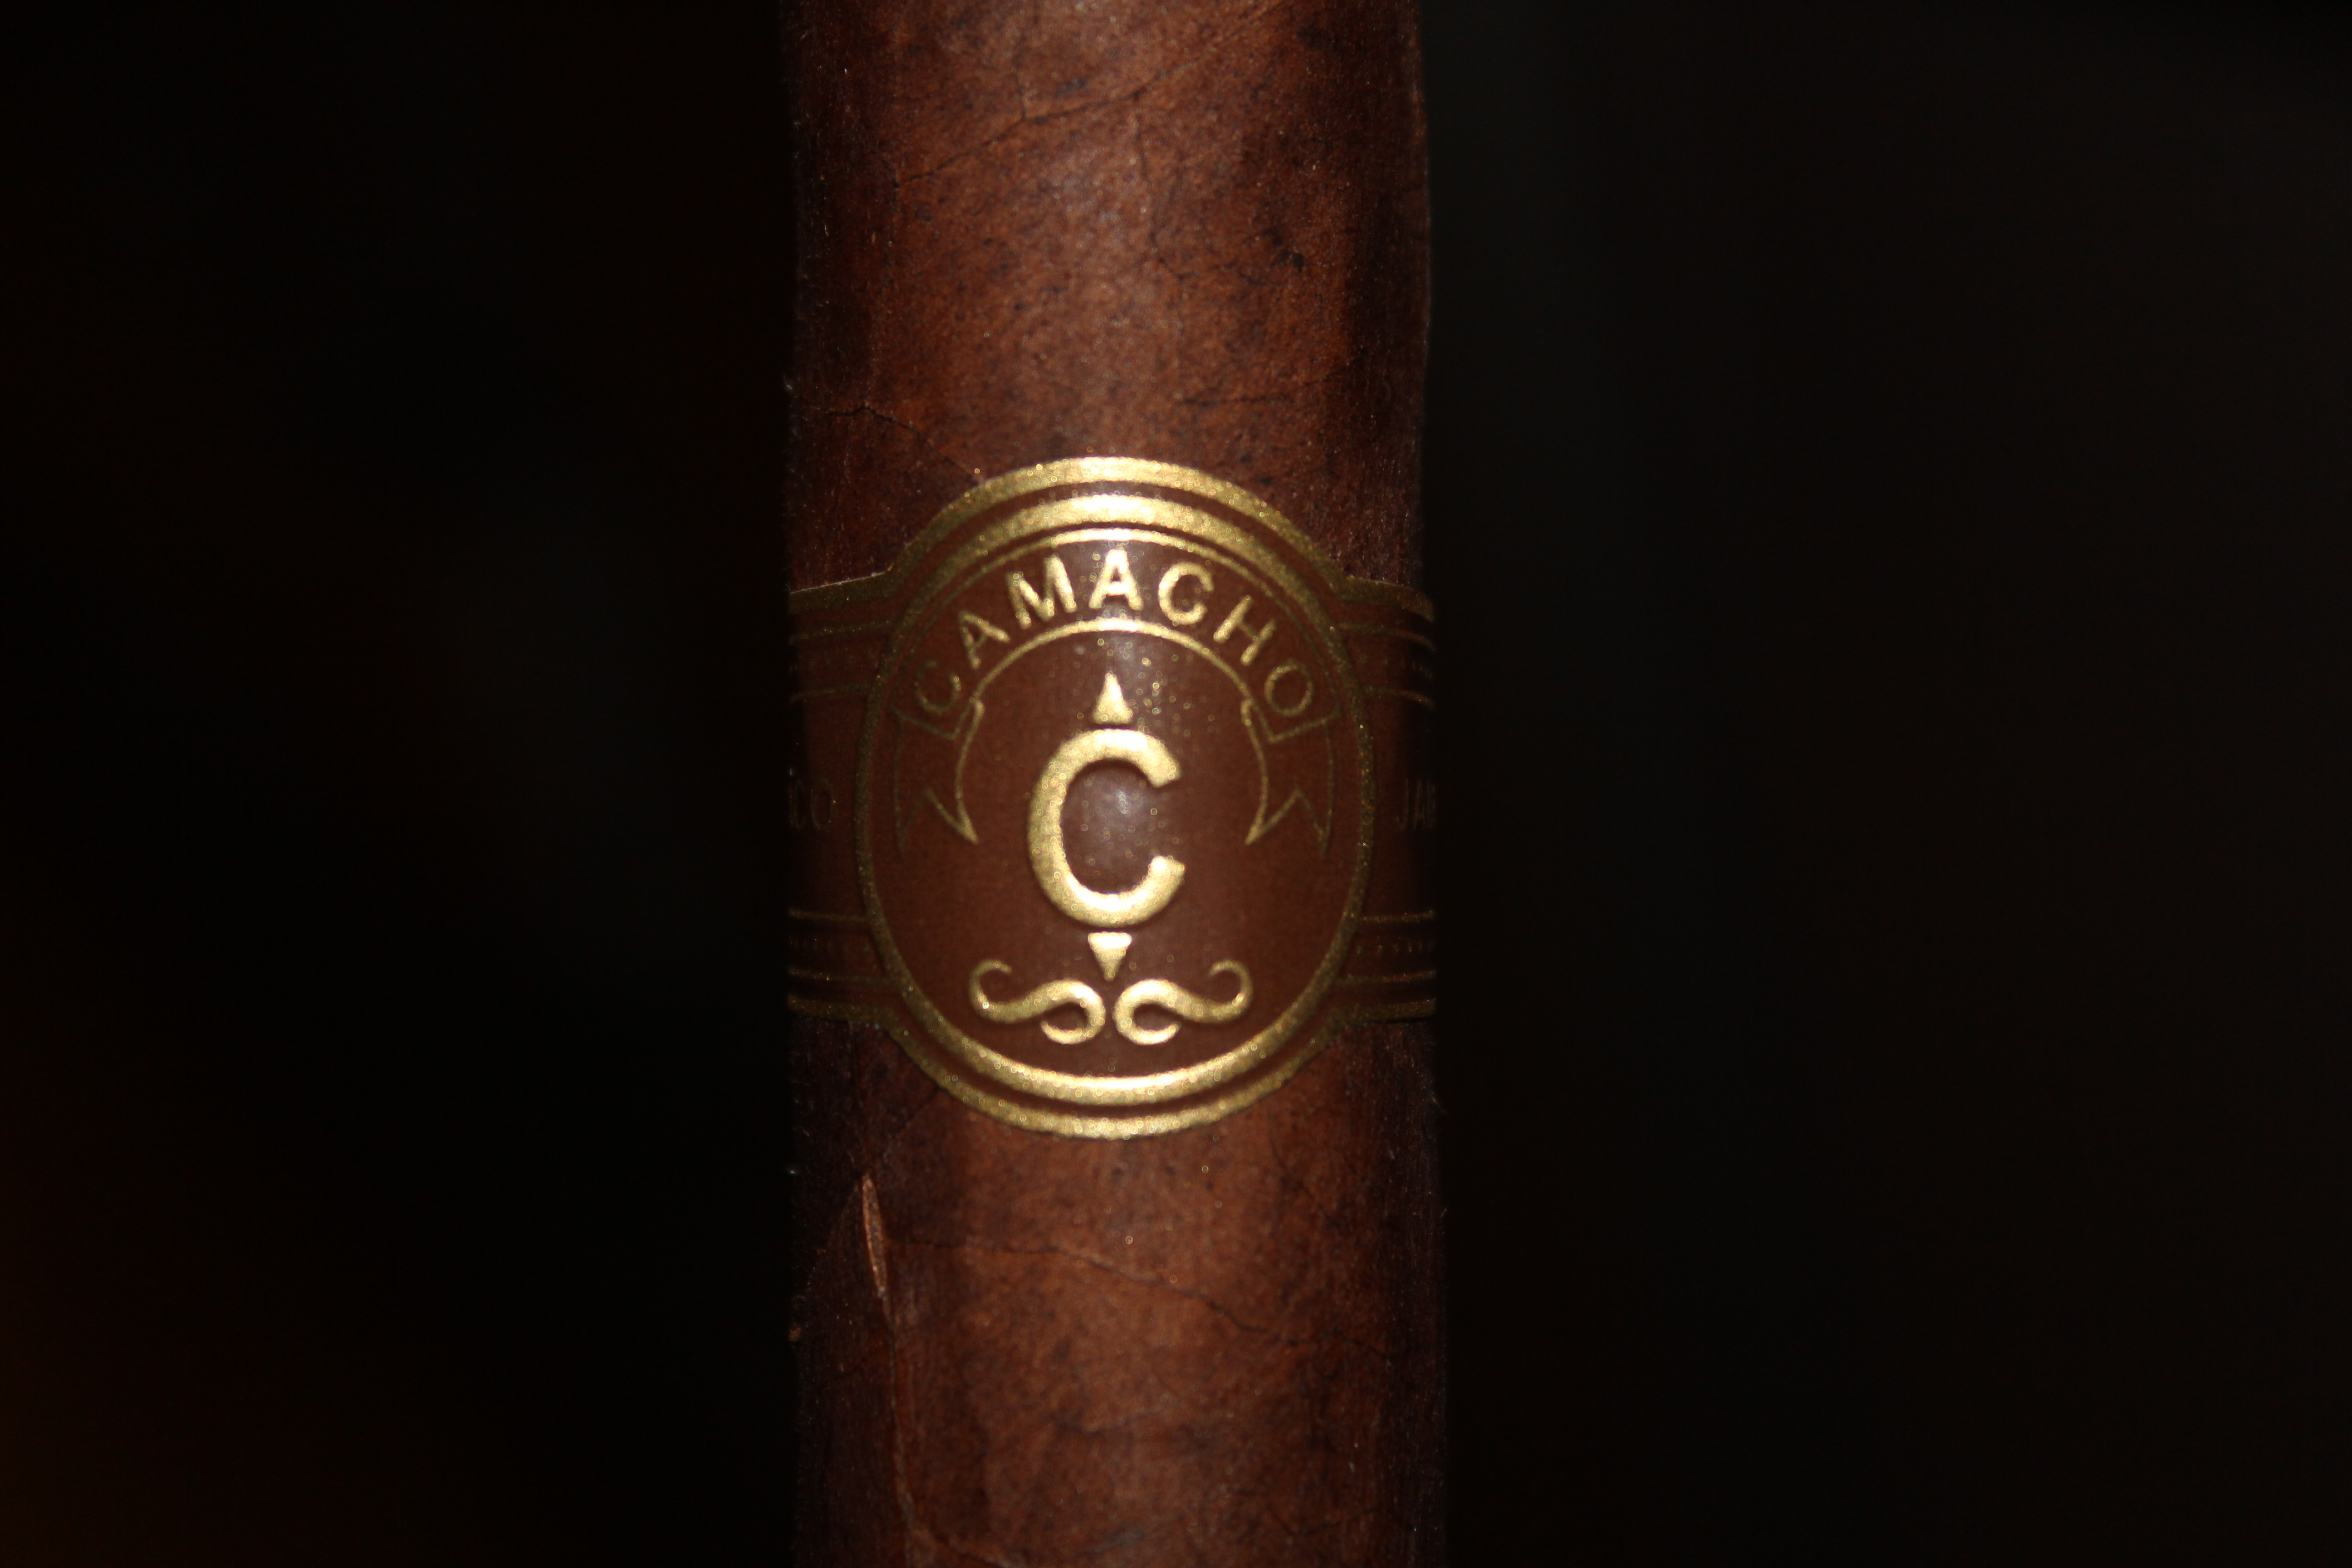 Camacho Corojo Monarca – Cigar Review